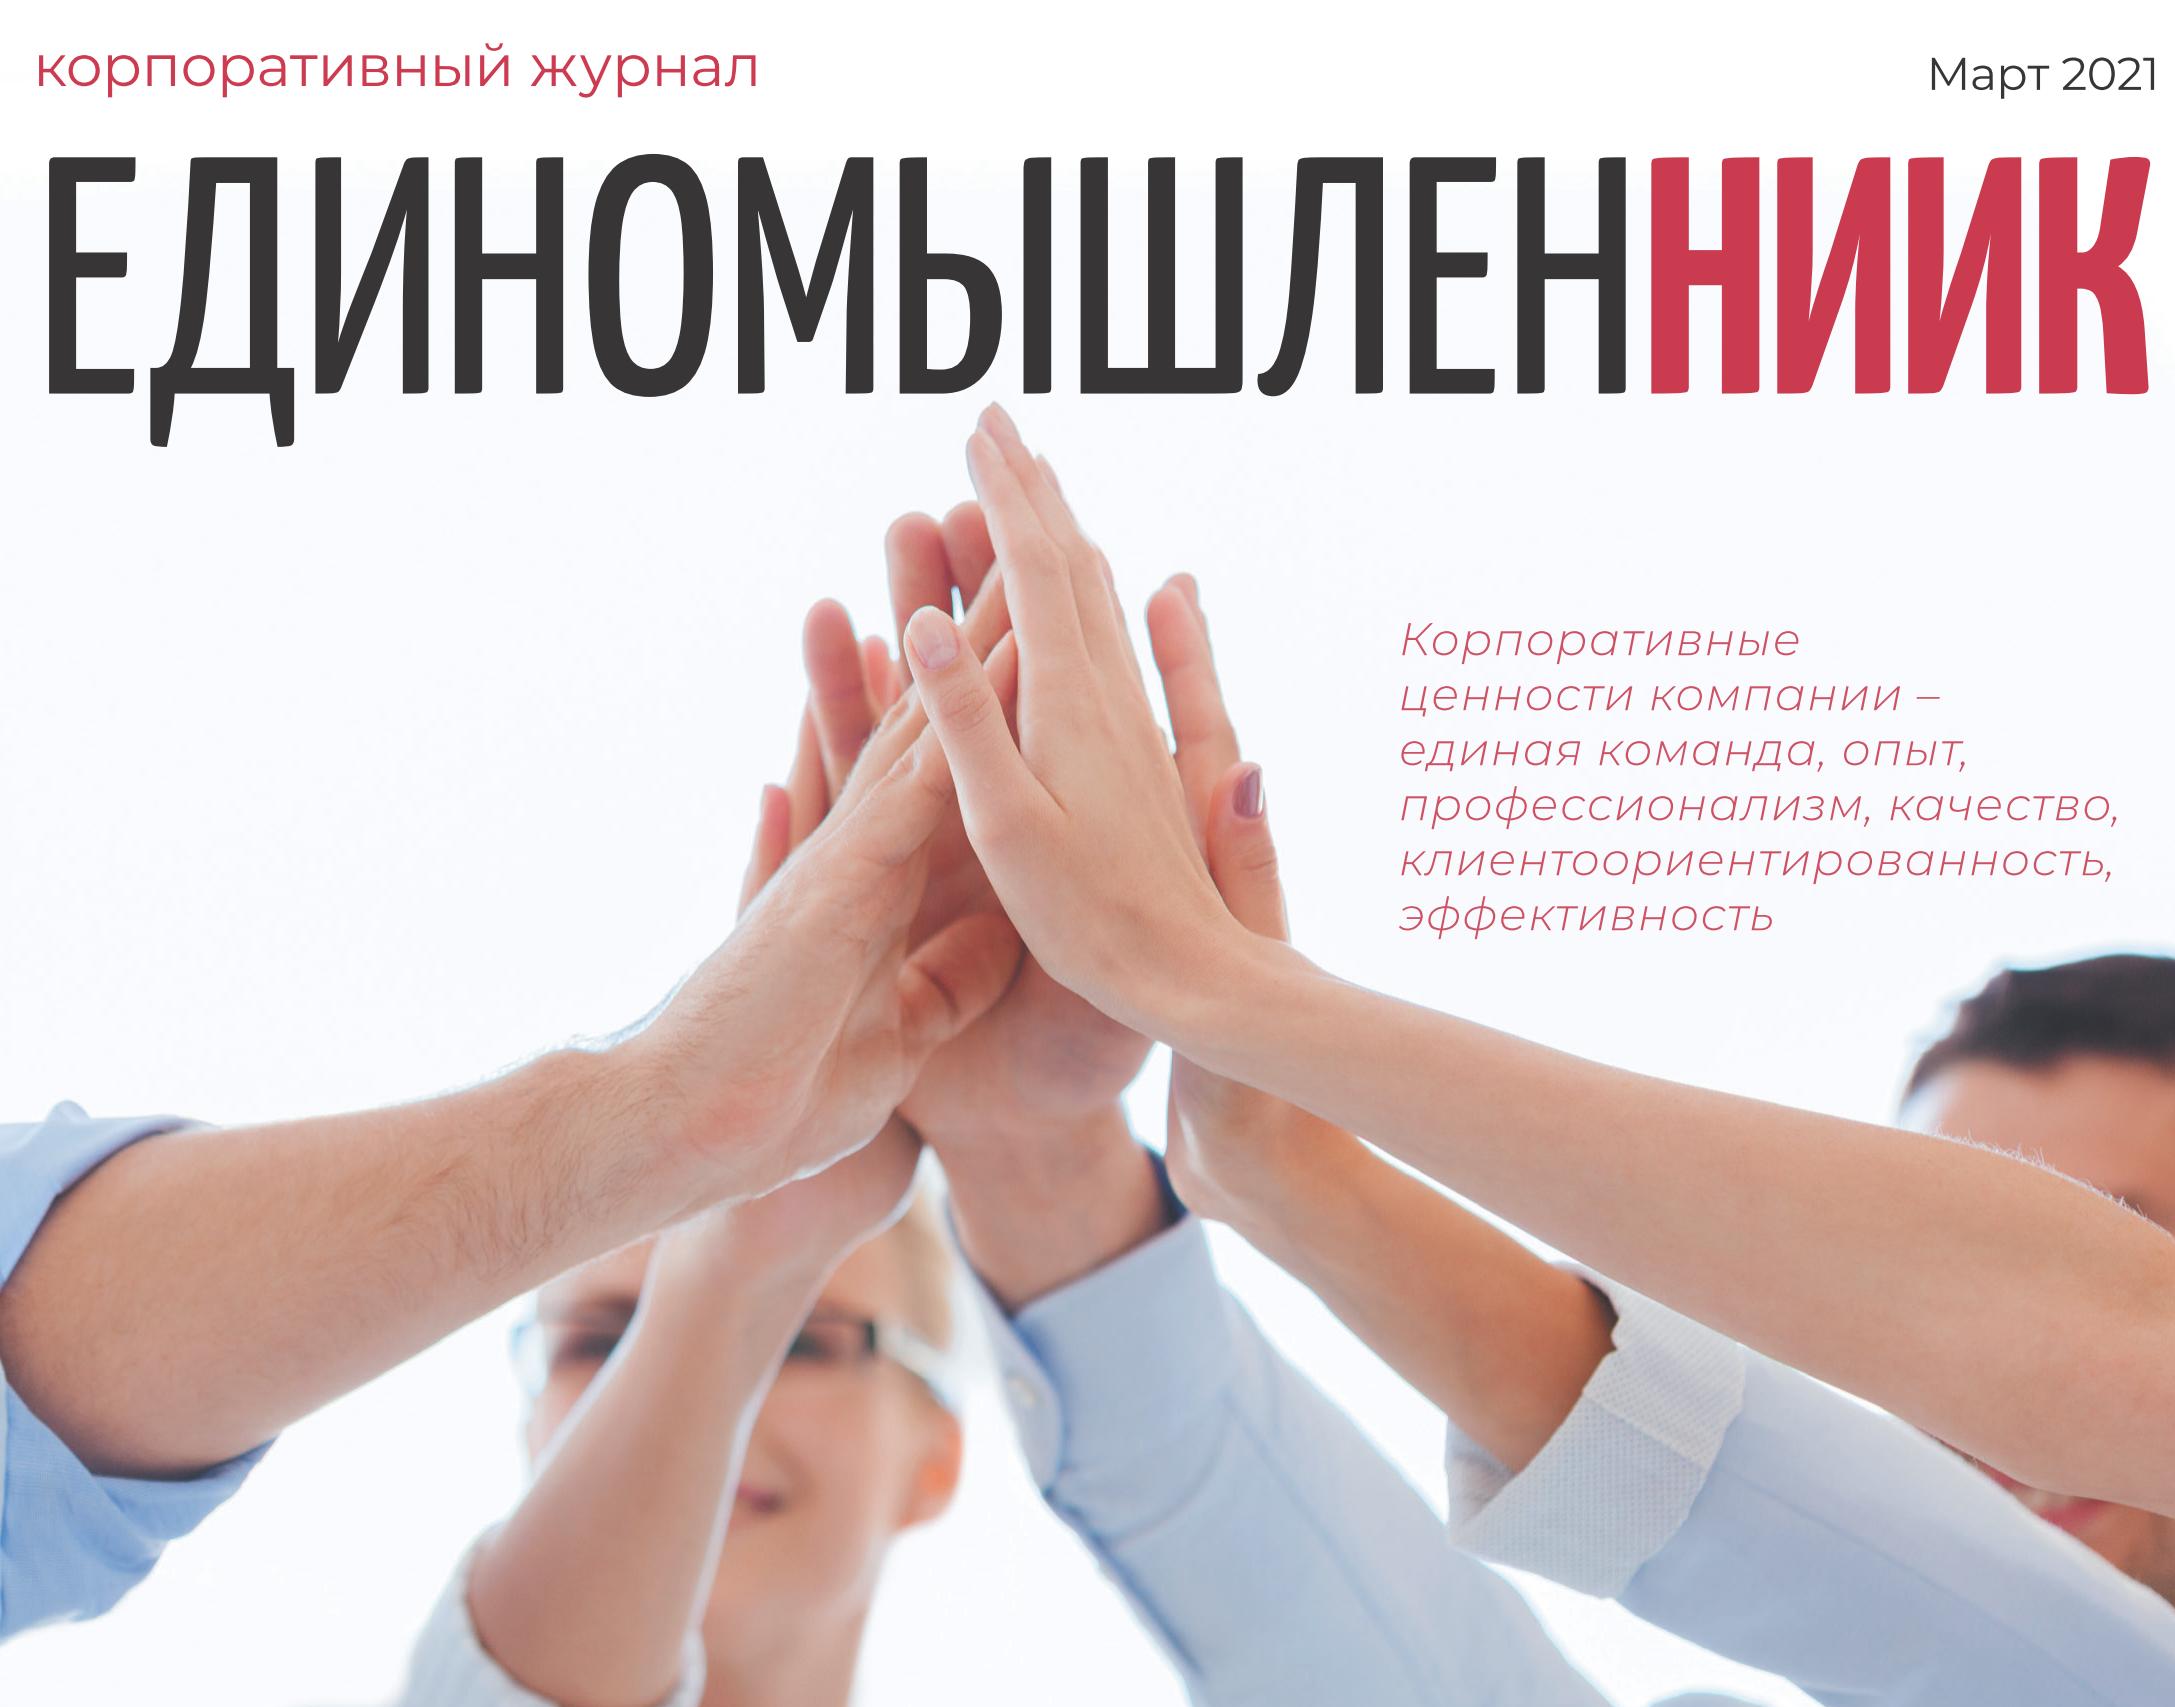 В НИИК вышел очередной номер корпоративного журнала «ЕдиномышленНИИК»